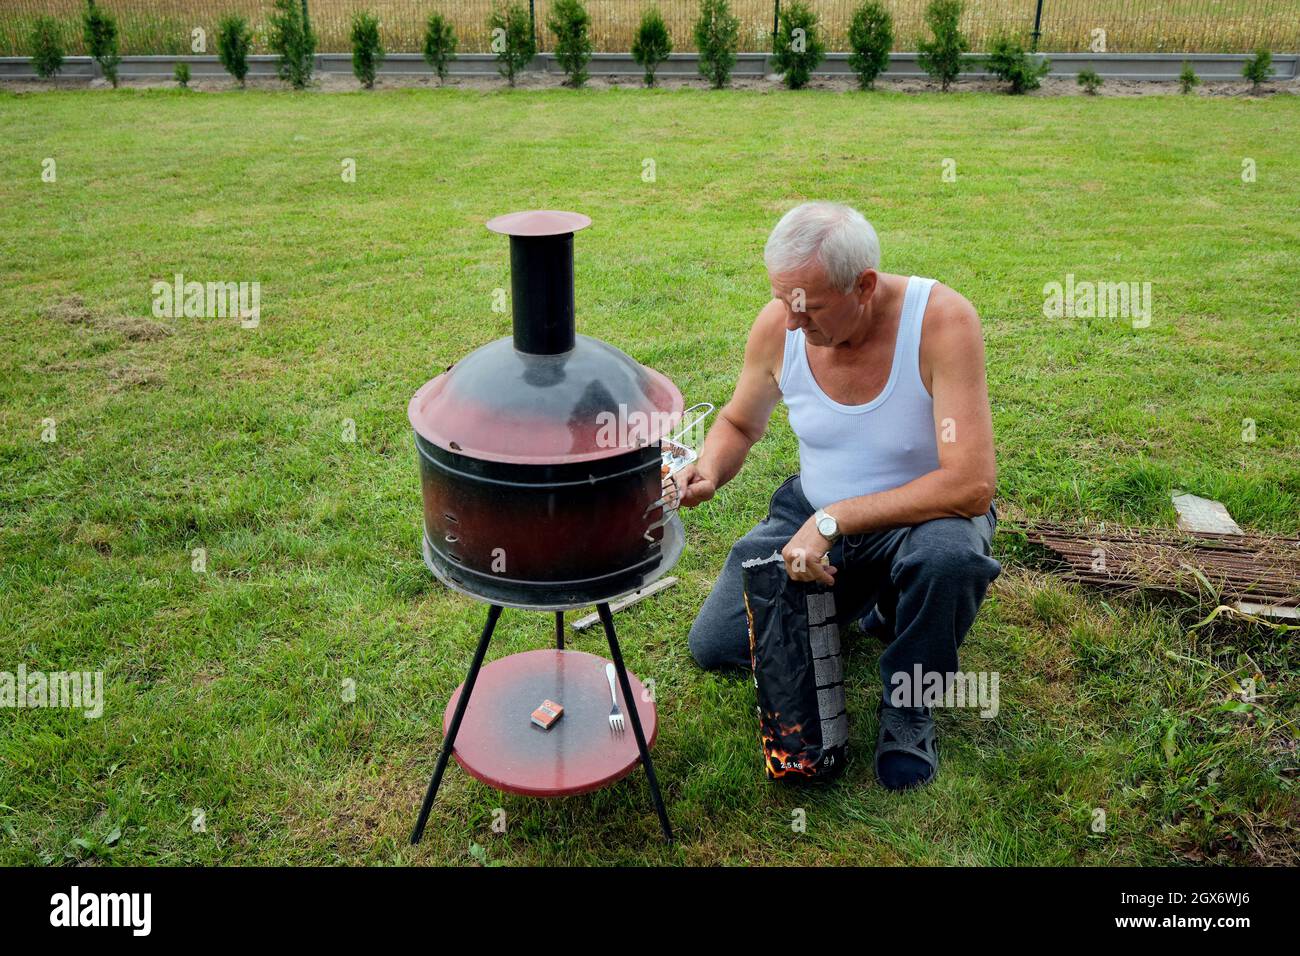 un hombre mayor se arrodilla en una barbacoa al aire libre contra un fondo de hierba verde Foto de stock